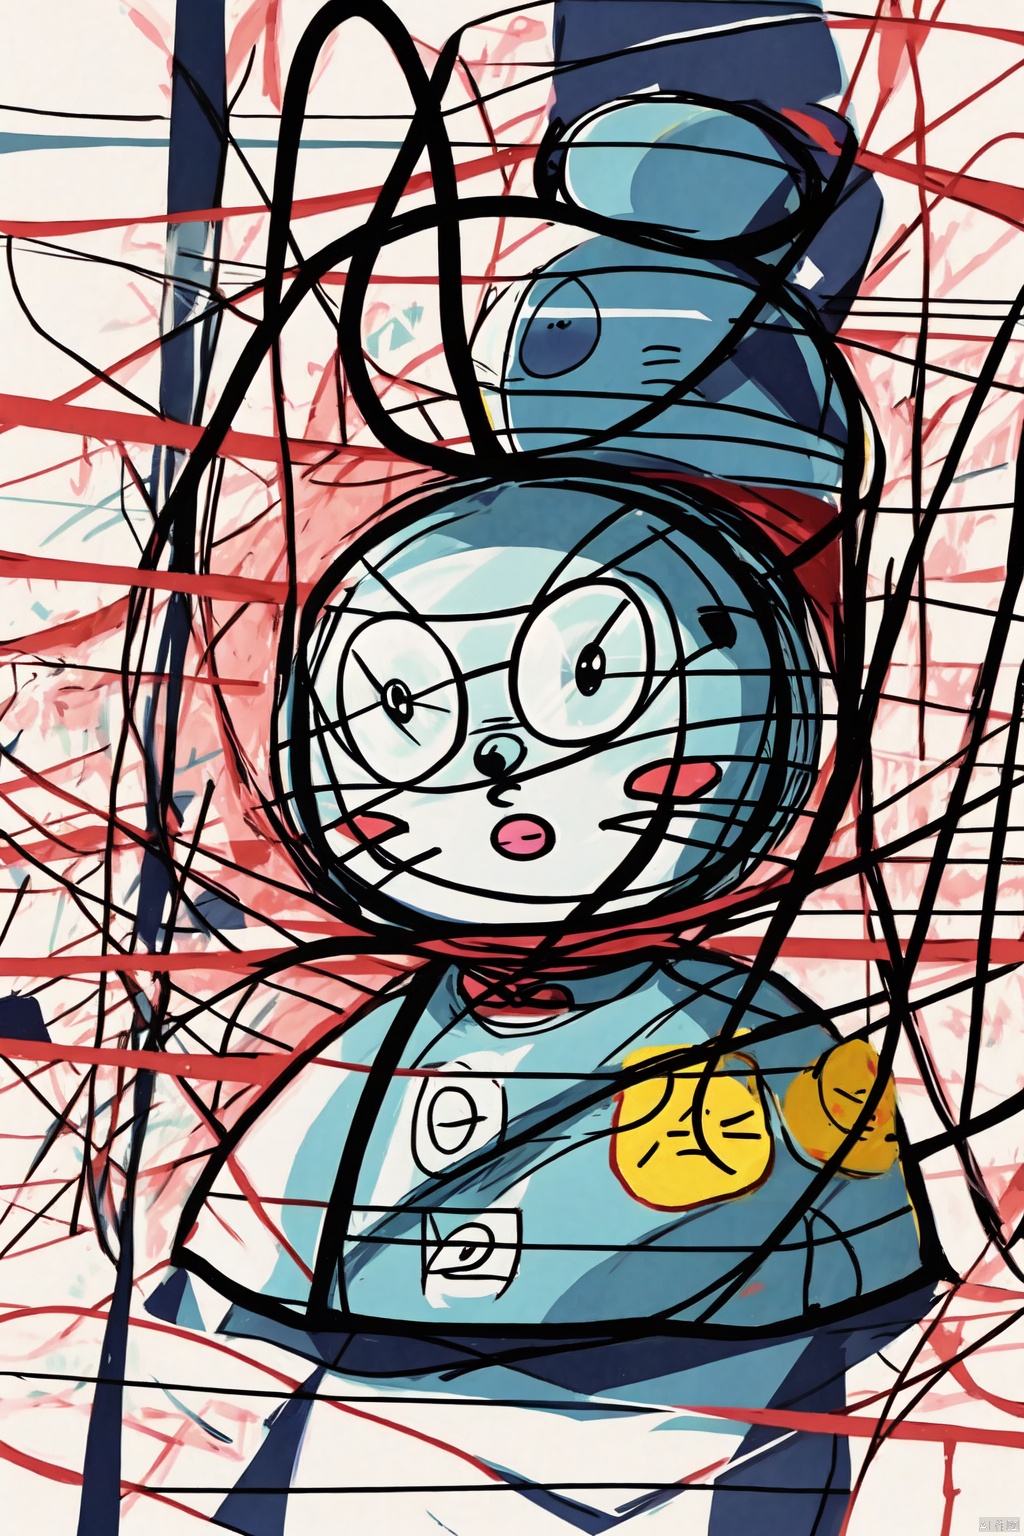  Doraemon,Clutteredlines,, Cluttered lines